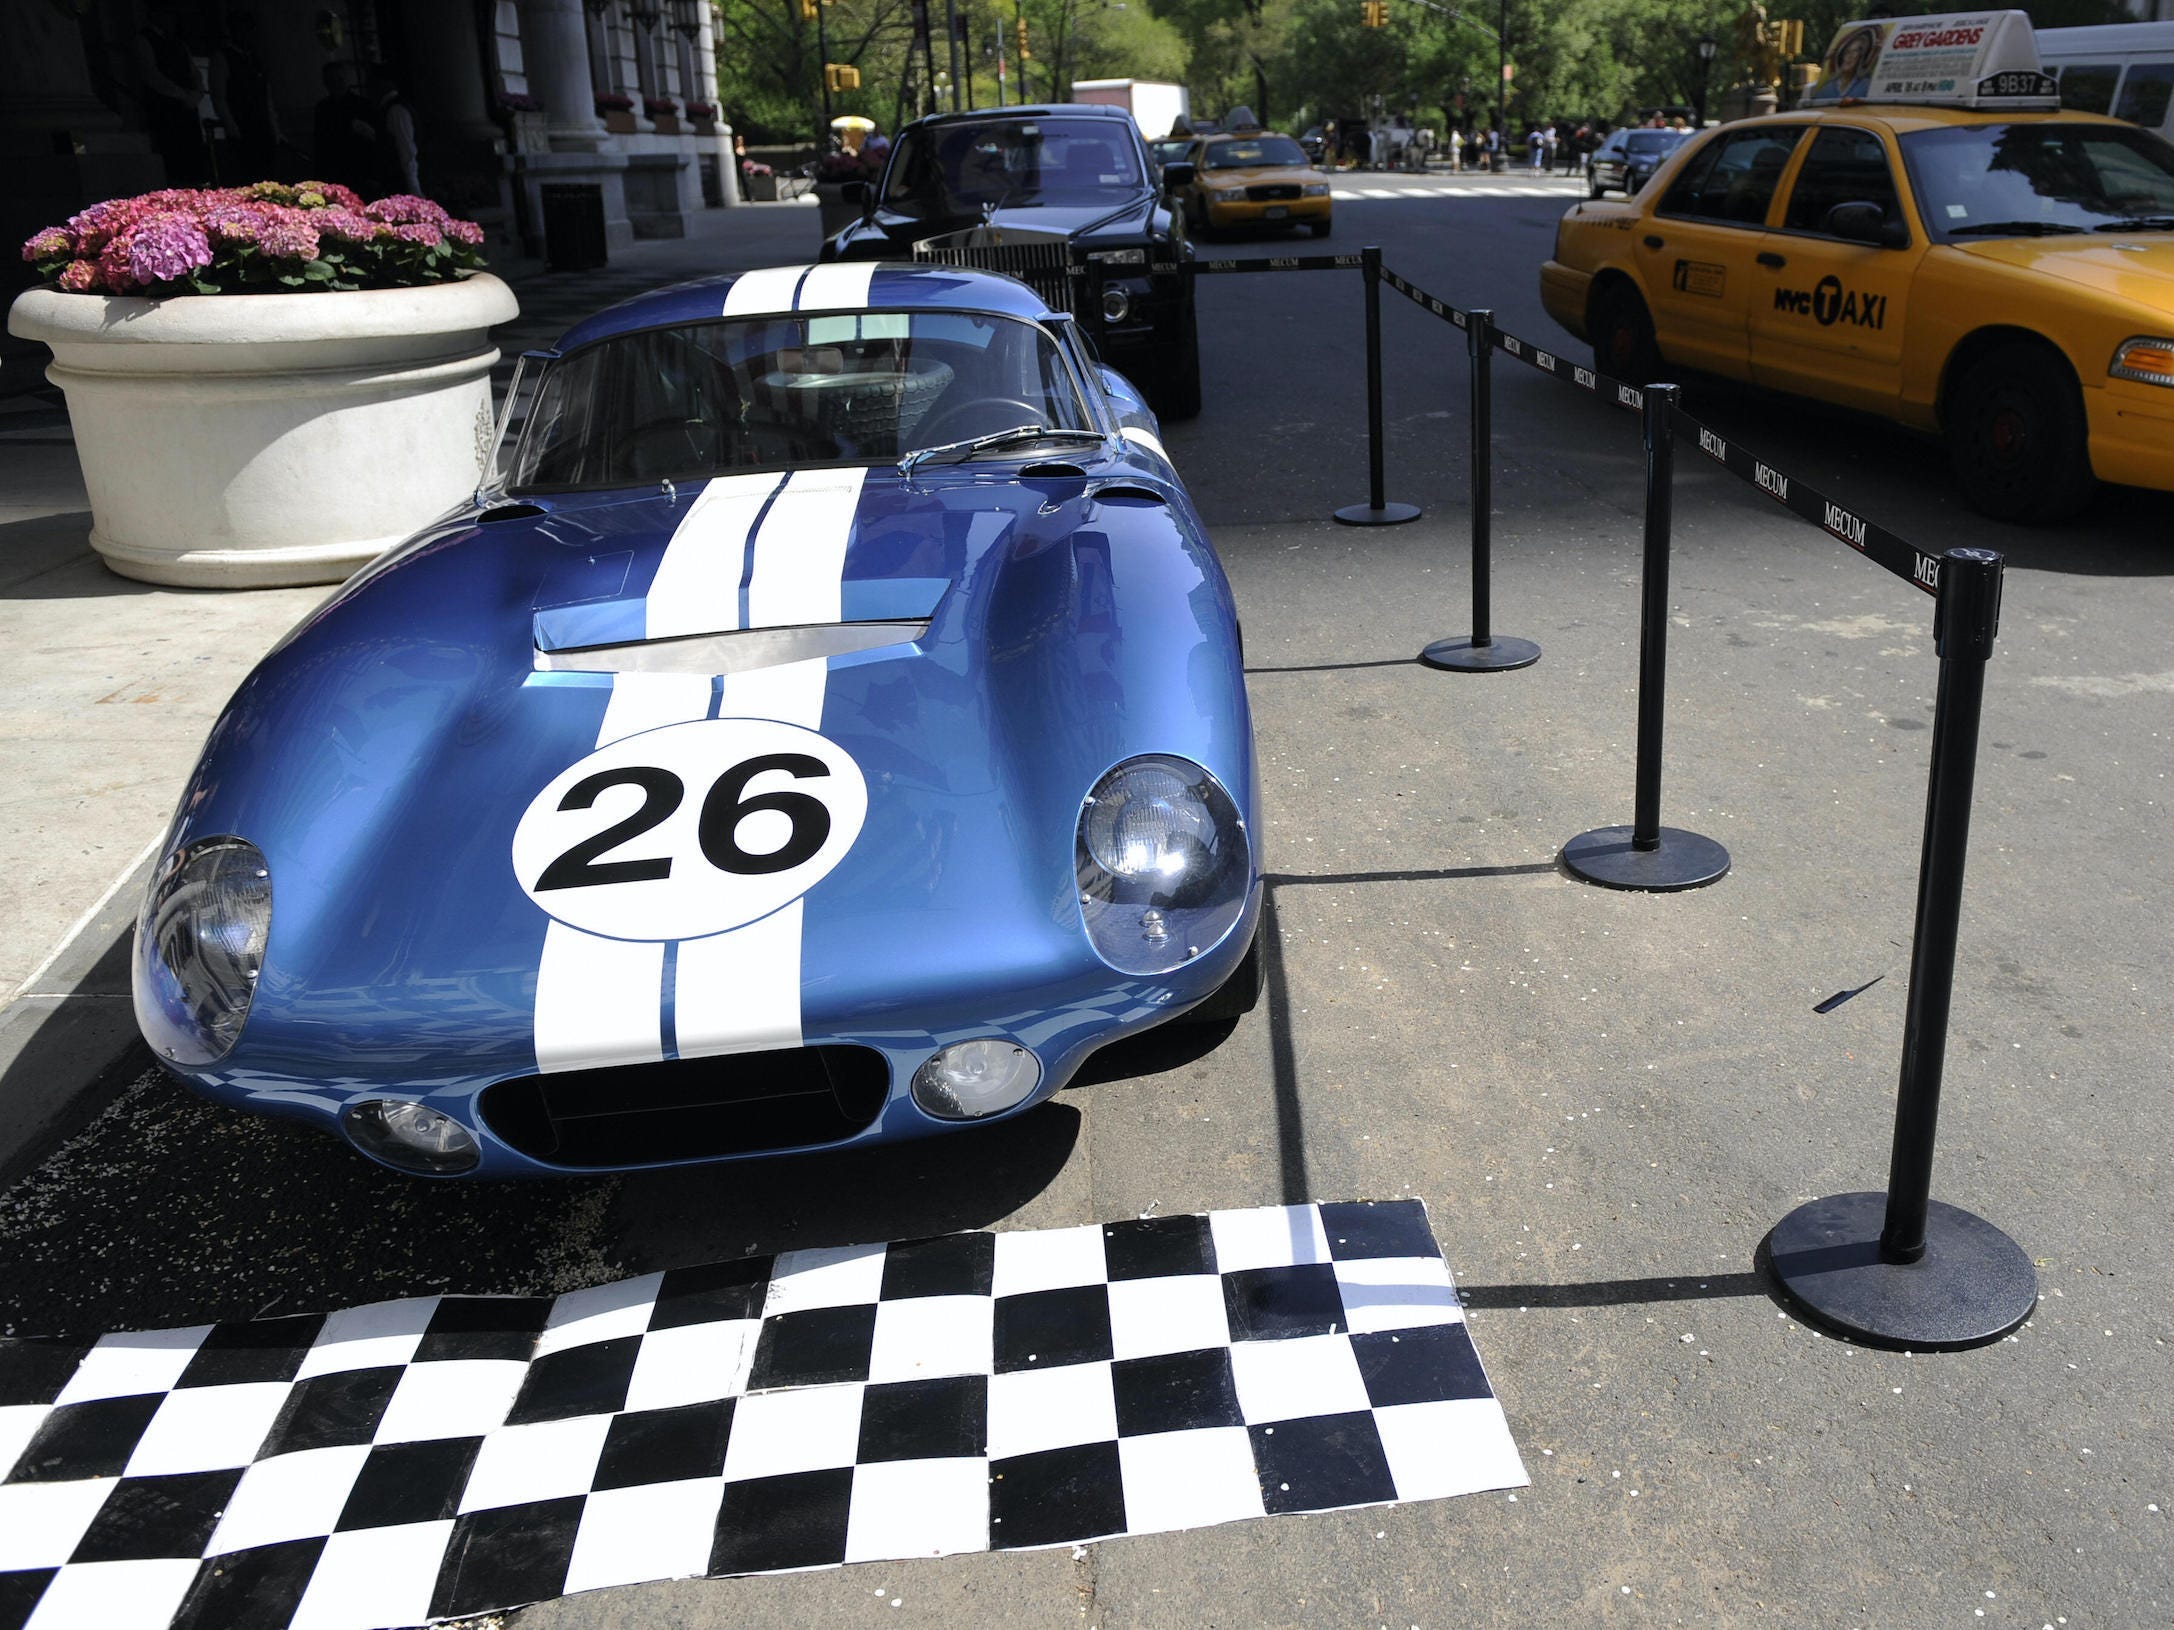 Shelby Daytona Cobra Coupé parkte auf der Straße in New York City, während ein gelbes Taxi vorbeifuhr